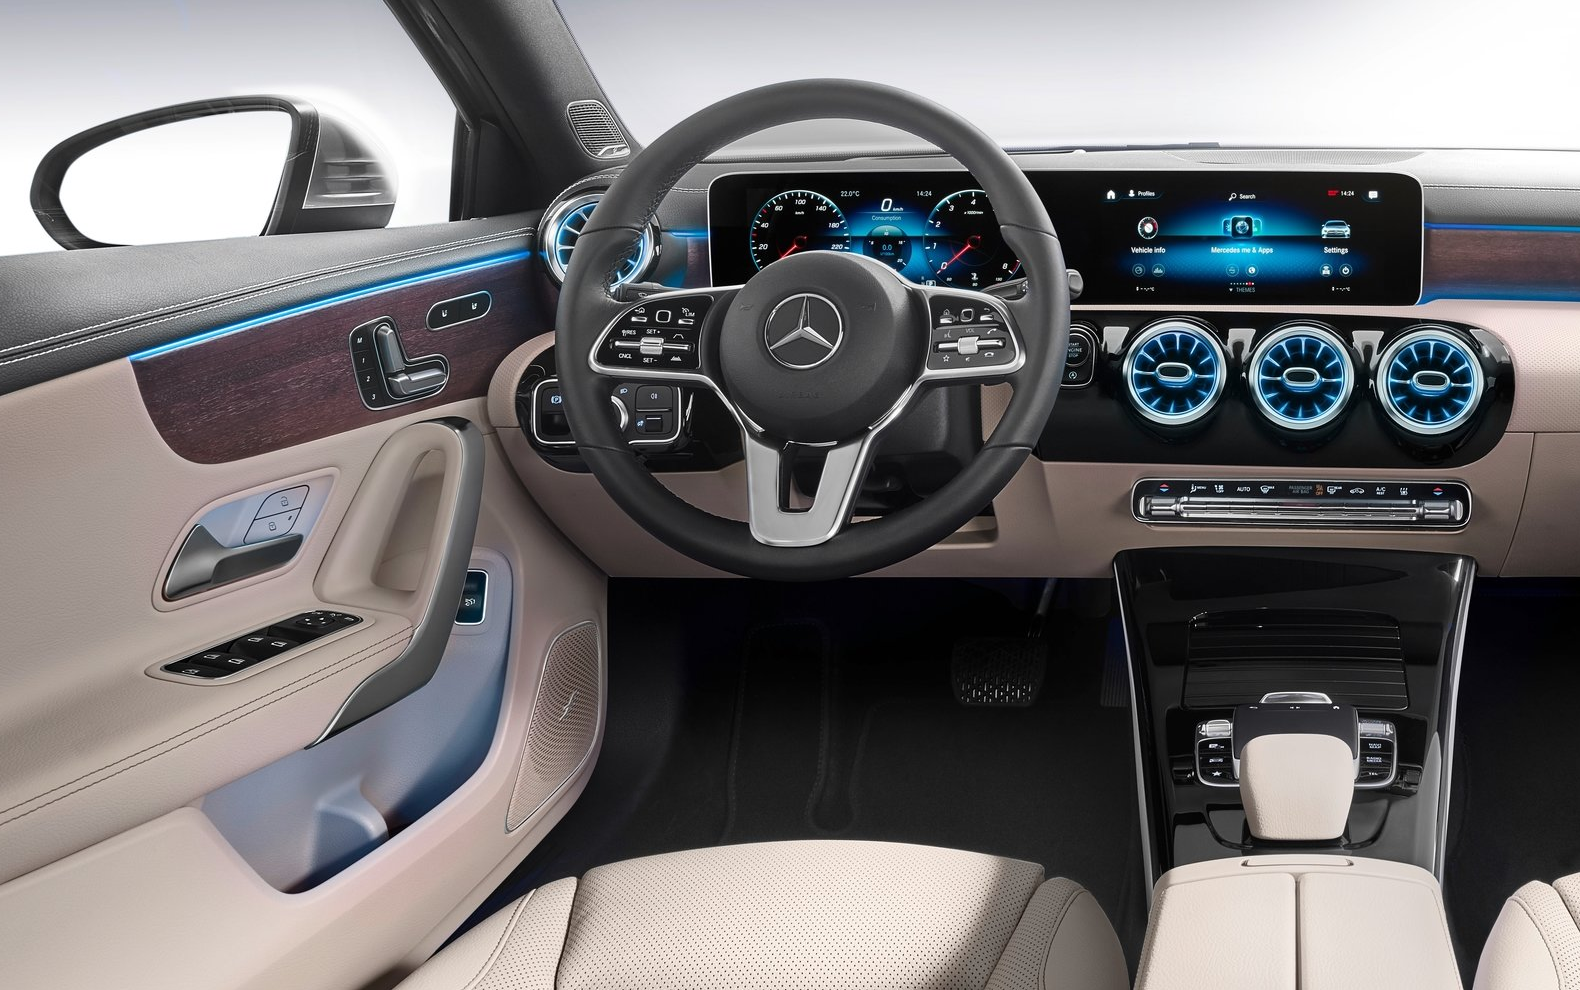 2019 Mercedes-Benz A-Class - inside of vehicle